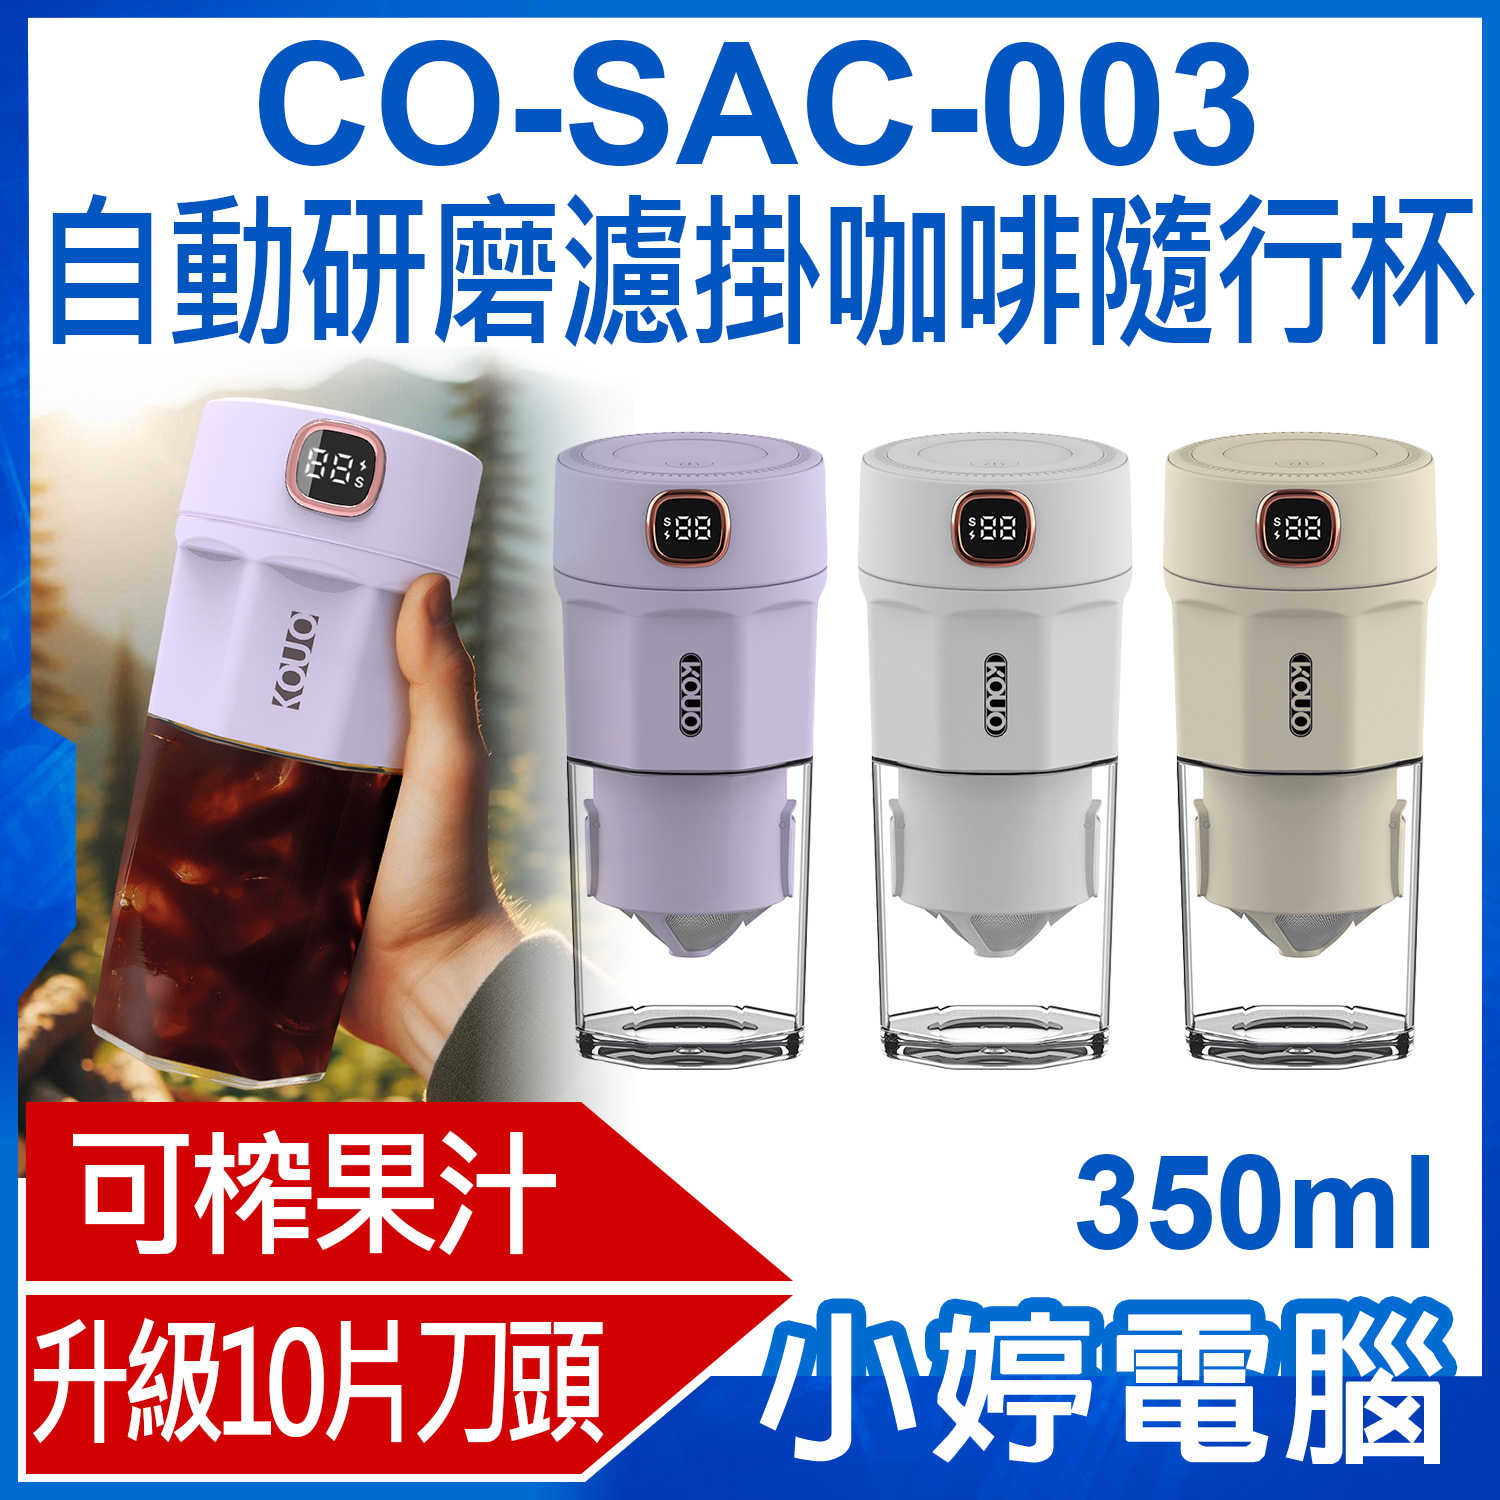 【小婷電腦】CO-SAC-003 自動研磨濾掛咖啡隨行杯 快速研磨 便攜果汁機 咖啡杯 研磨機 350ml